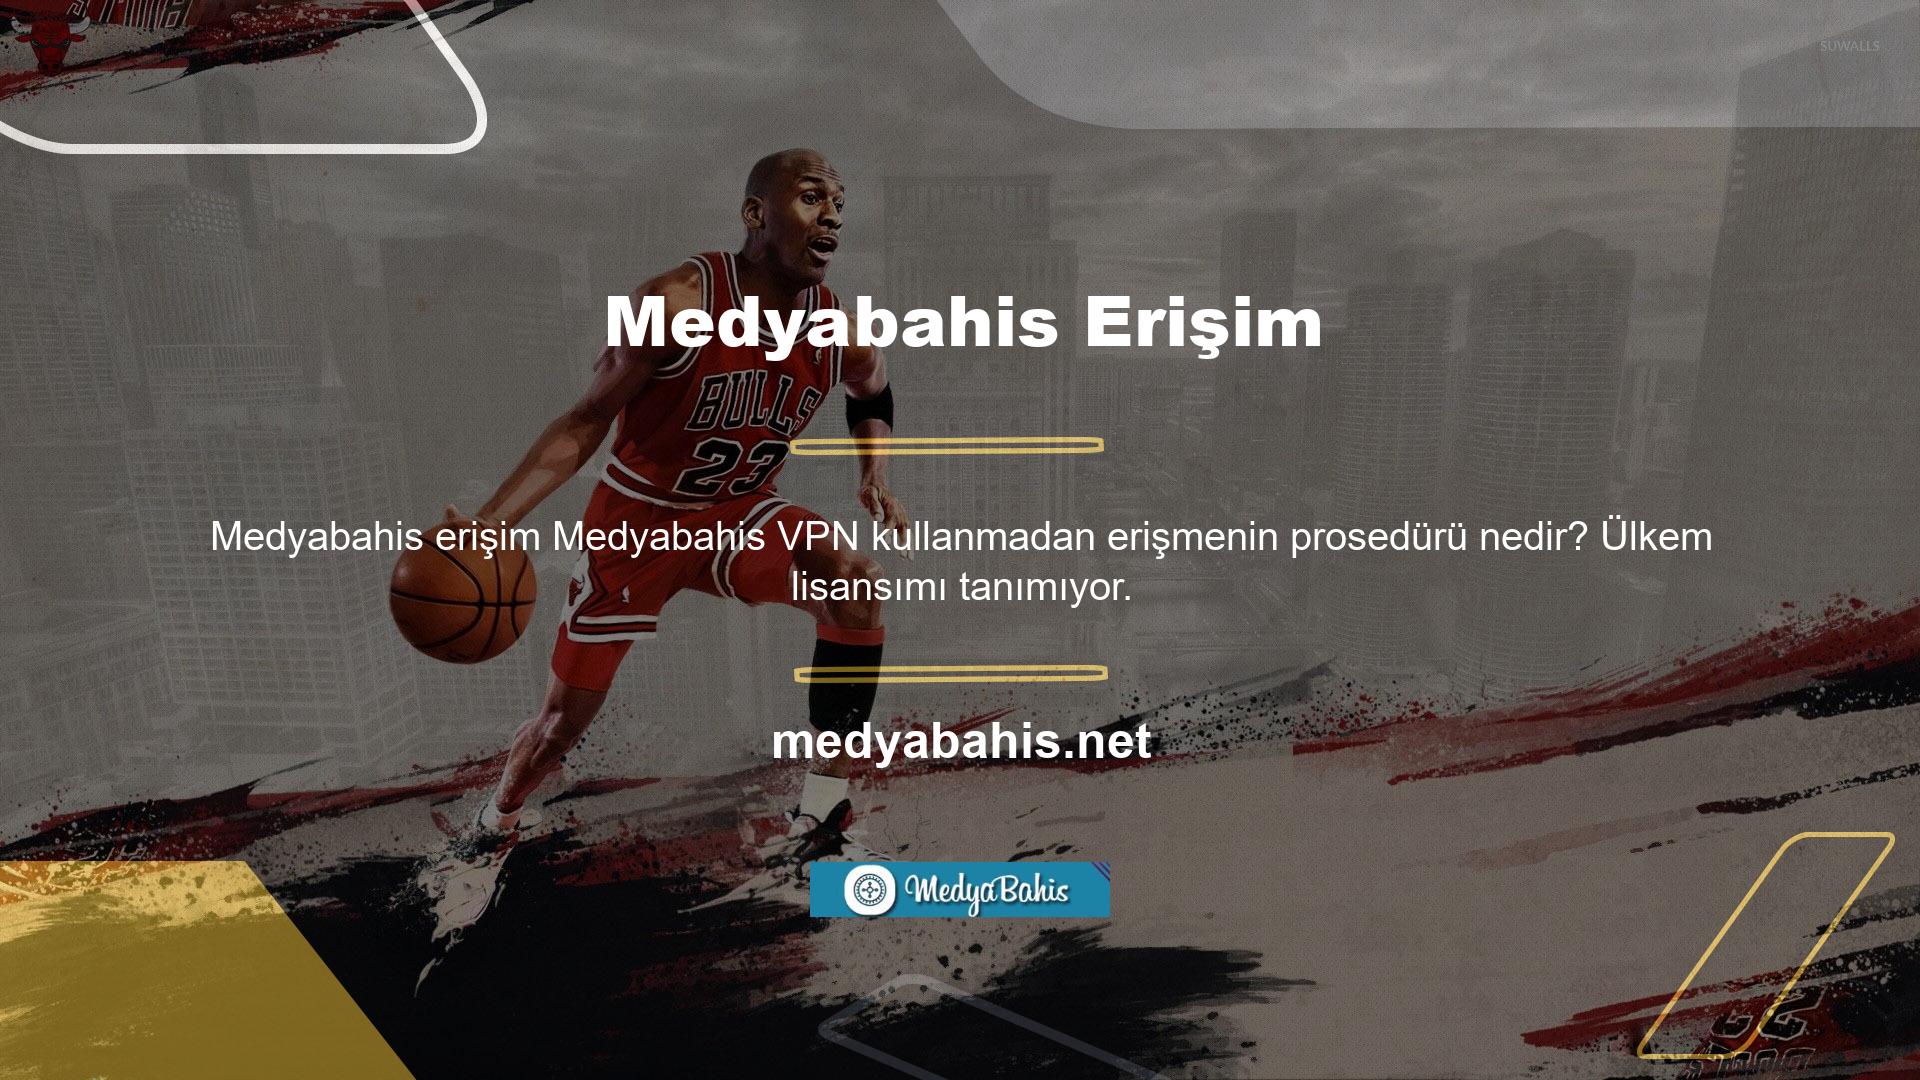 Özetlemek gerekirse Medyabahis, Türkiye’nin Casino yasalarının kurallarını çiğneyen bir web sitesidir Sonuç olarak Medyabahis giriş adresinizi değiştirmeniz tavsiye edilir